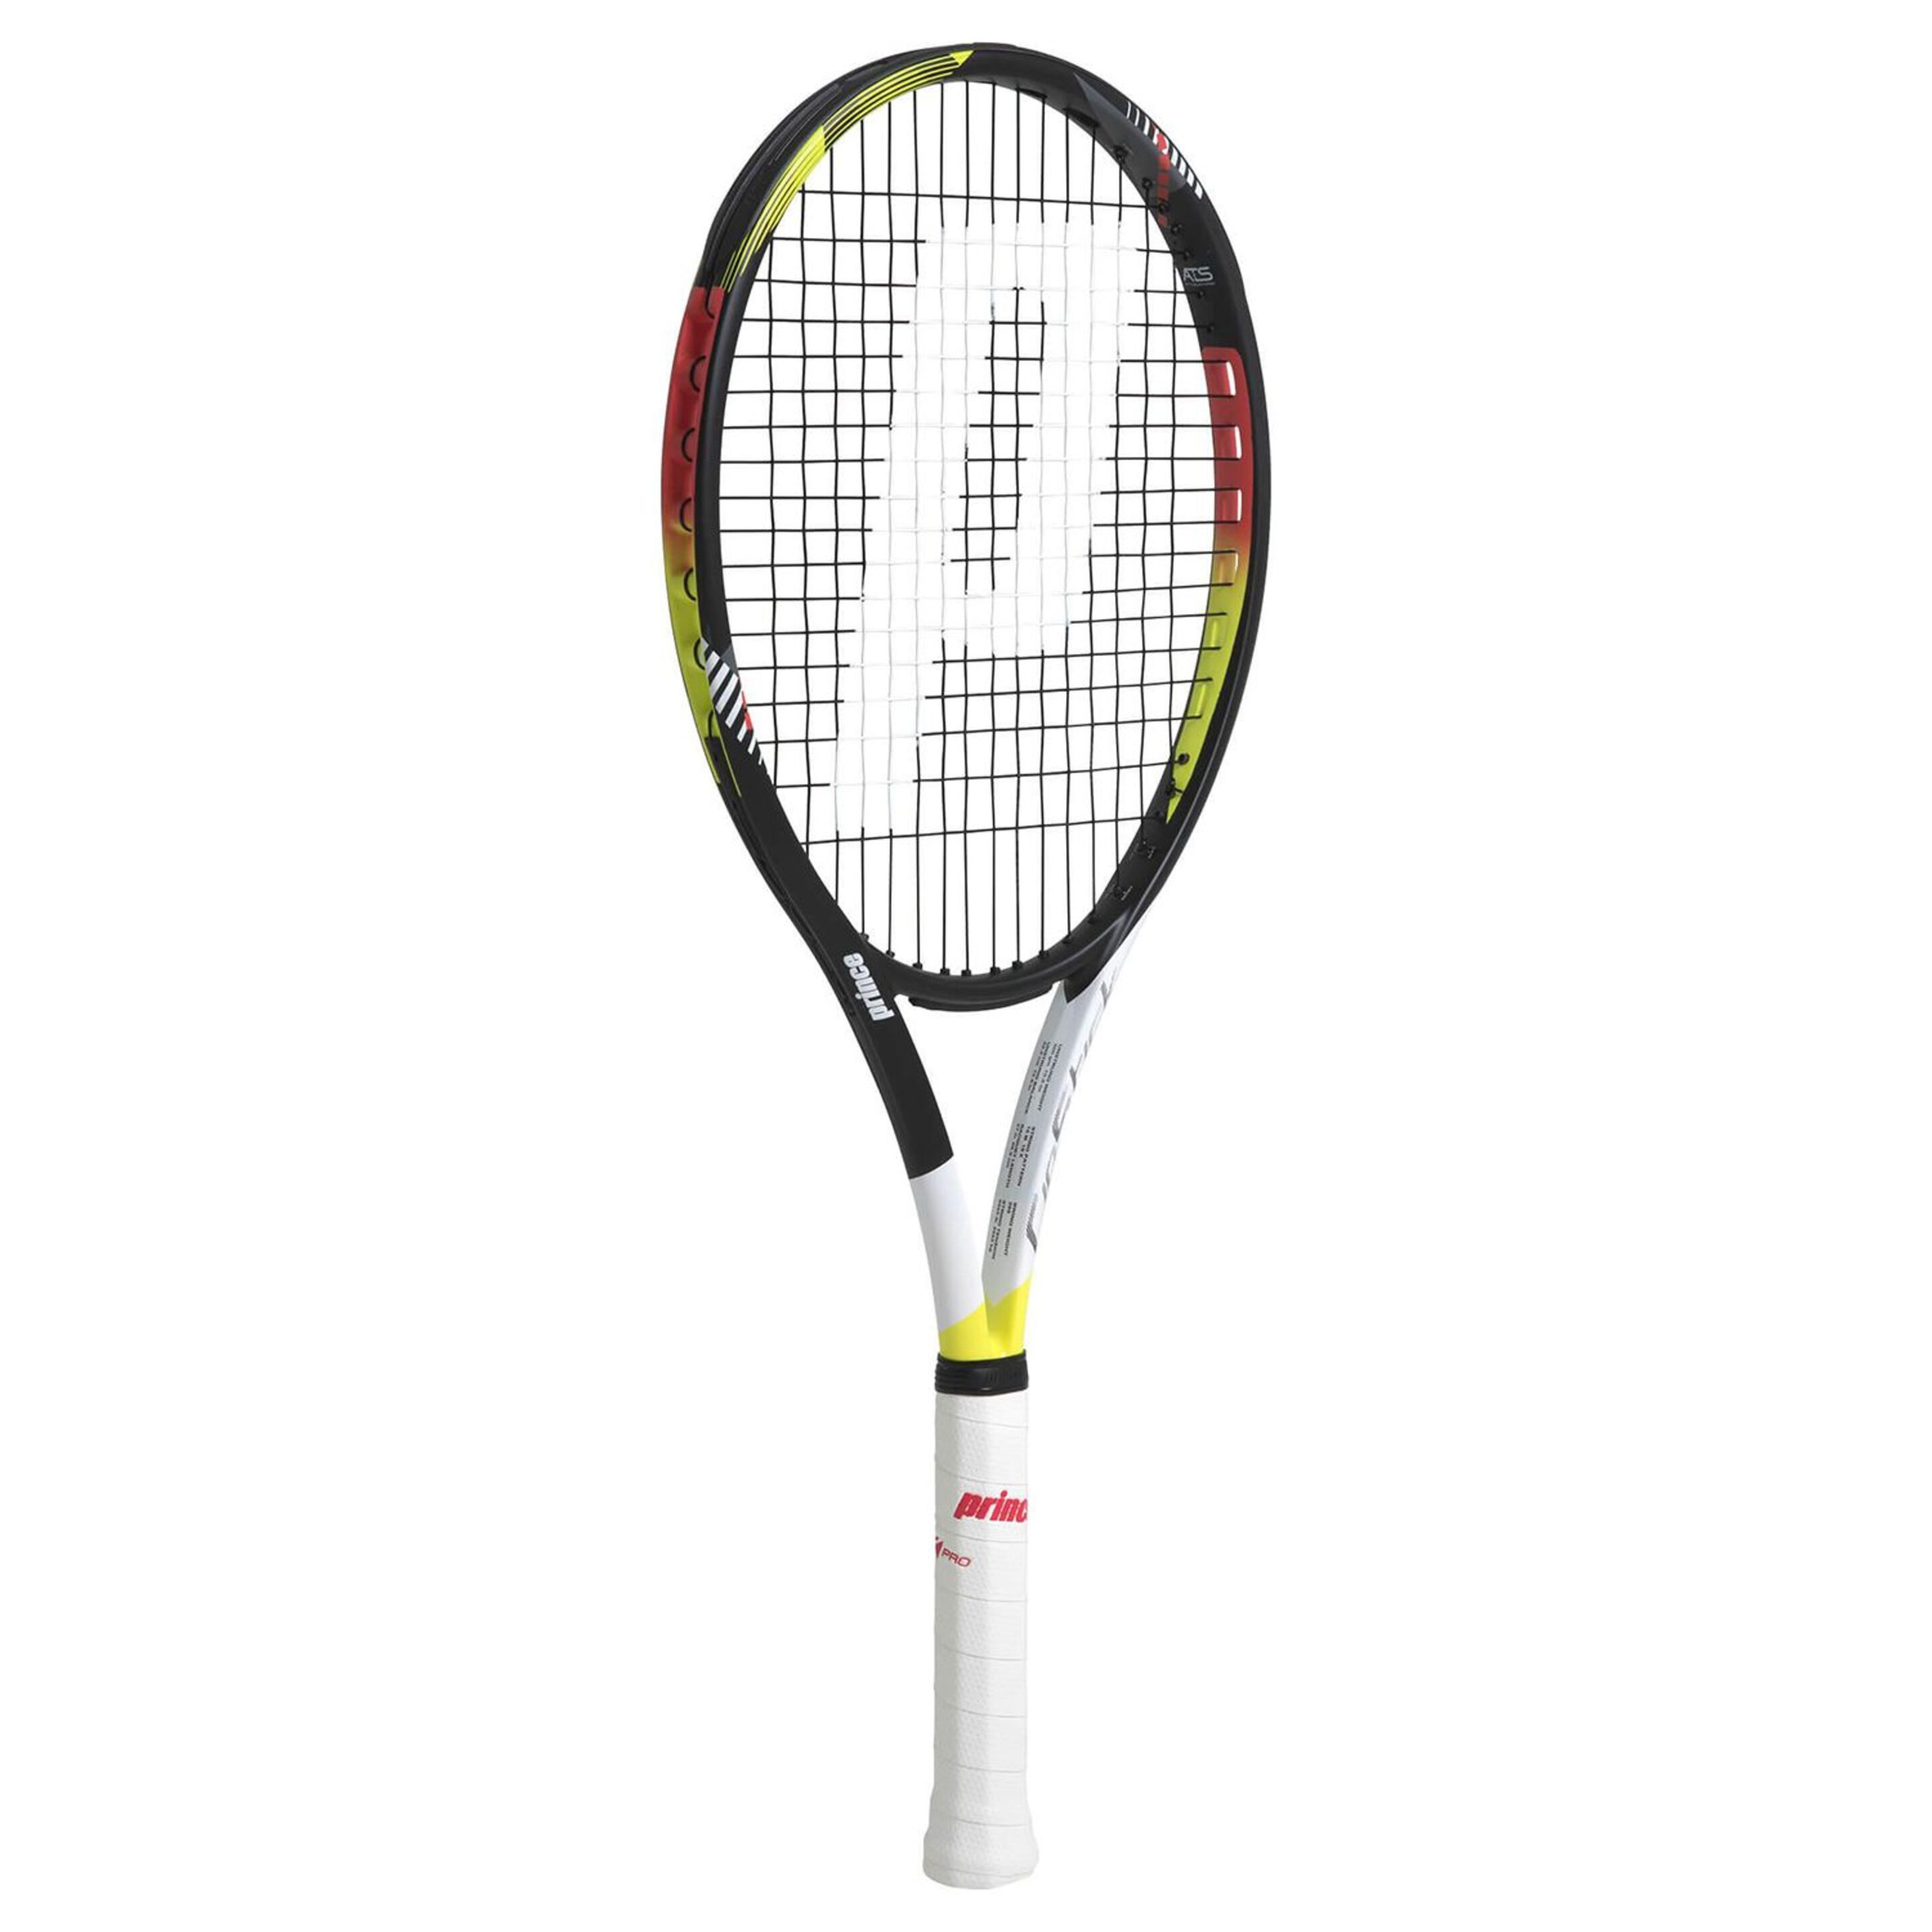 Raqueta De Tenis Prince Ripstick 100 300 G (sin Encordar Y Sin Funda) - multicolor - 